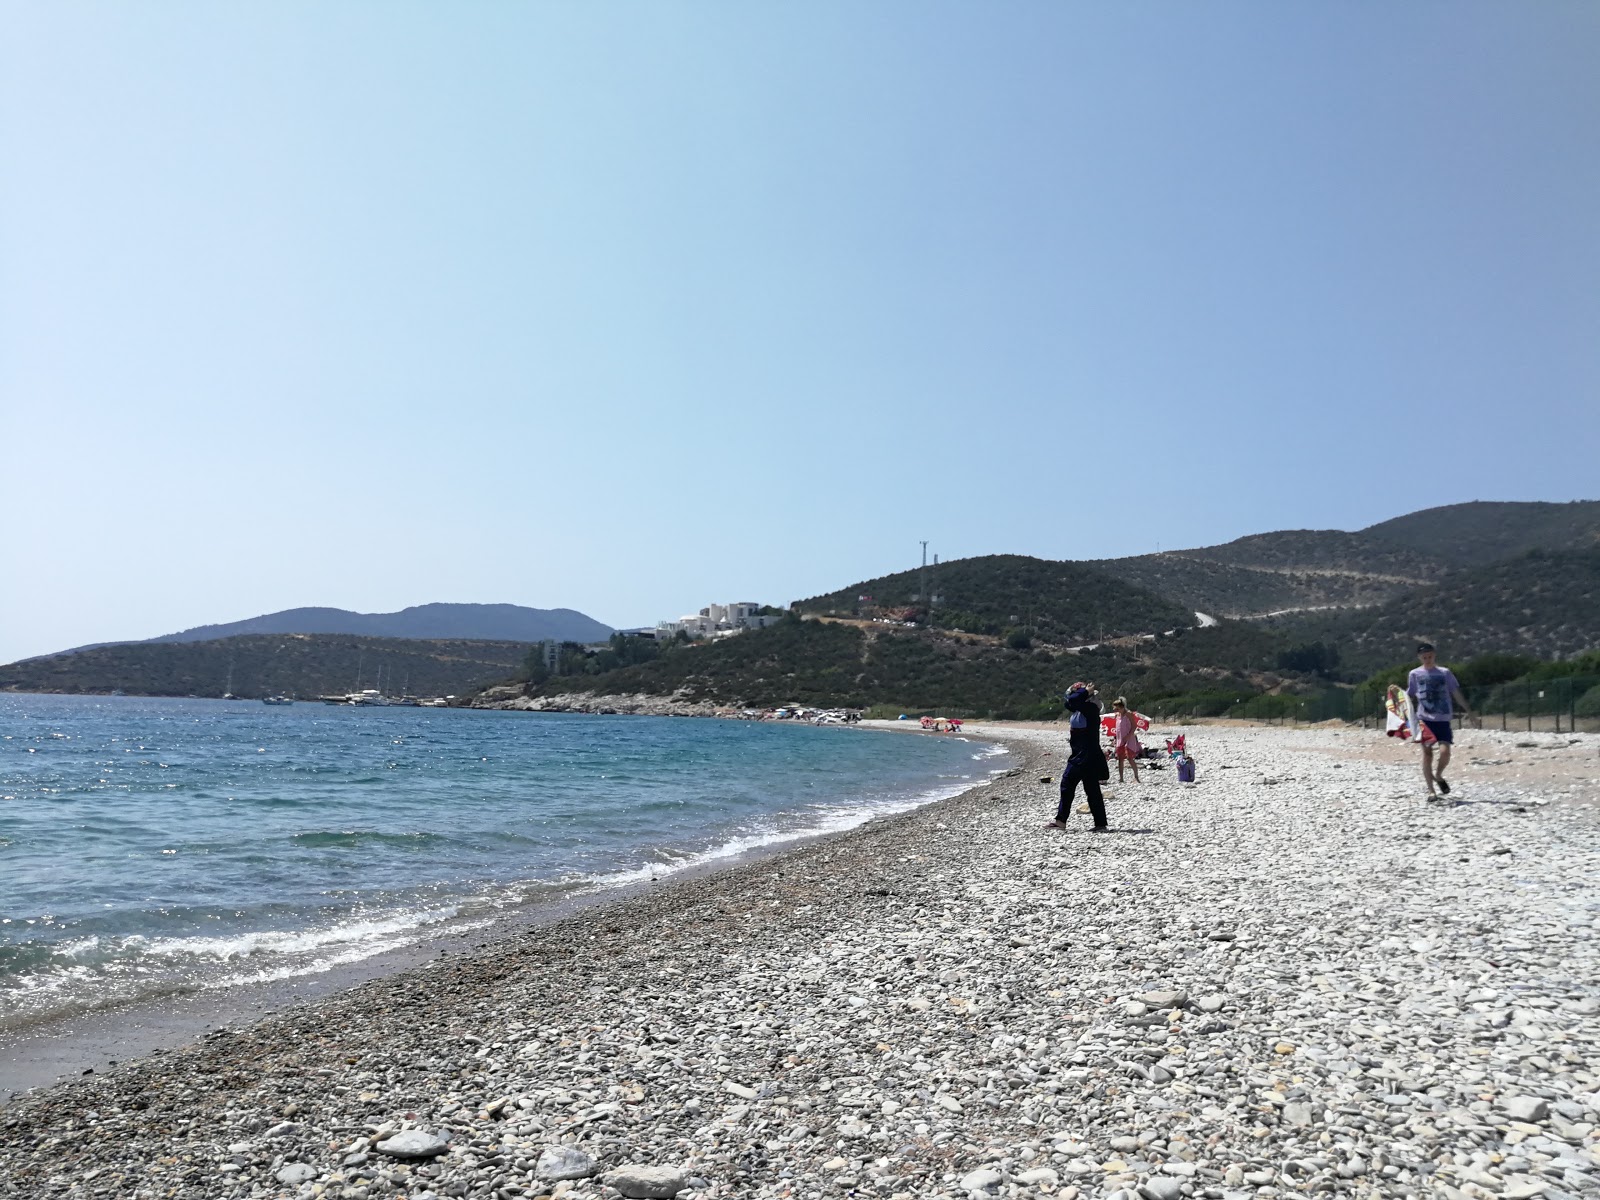 Fotografie cu Yaliciftlik beach cu o suprafață de apă pură albastră